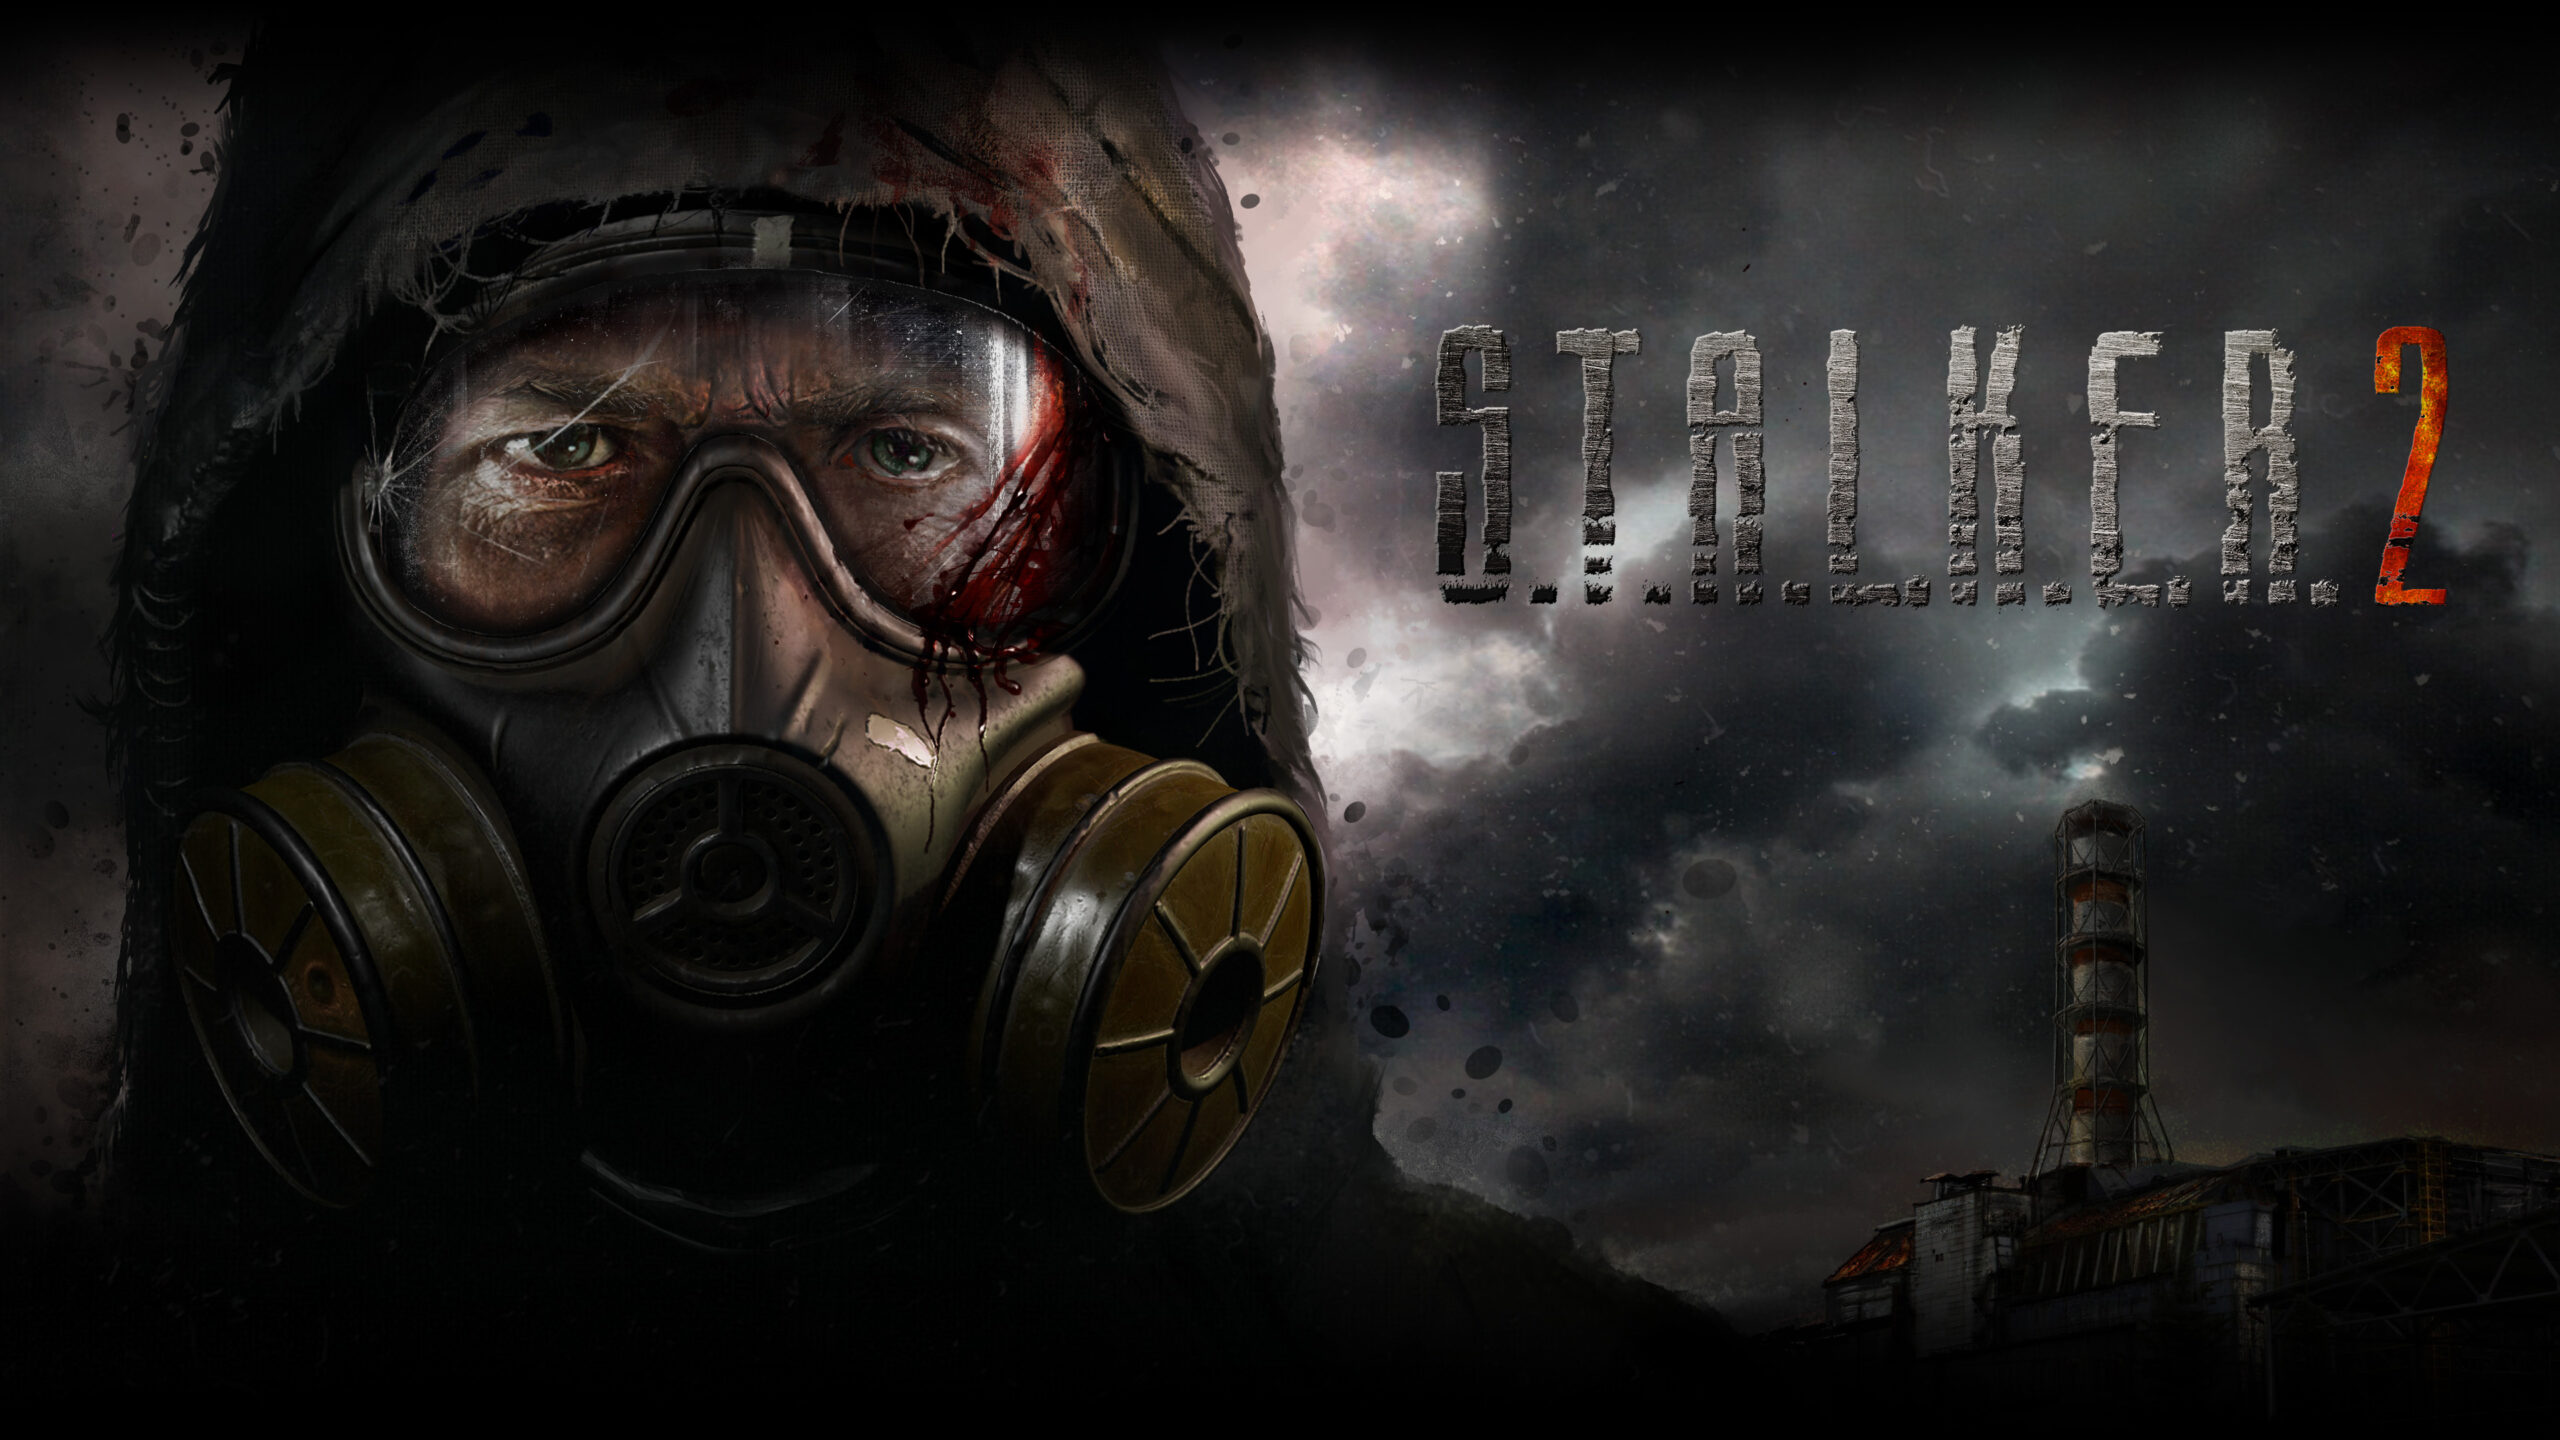 Stalker 2's release date is set for next April